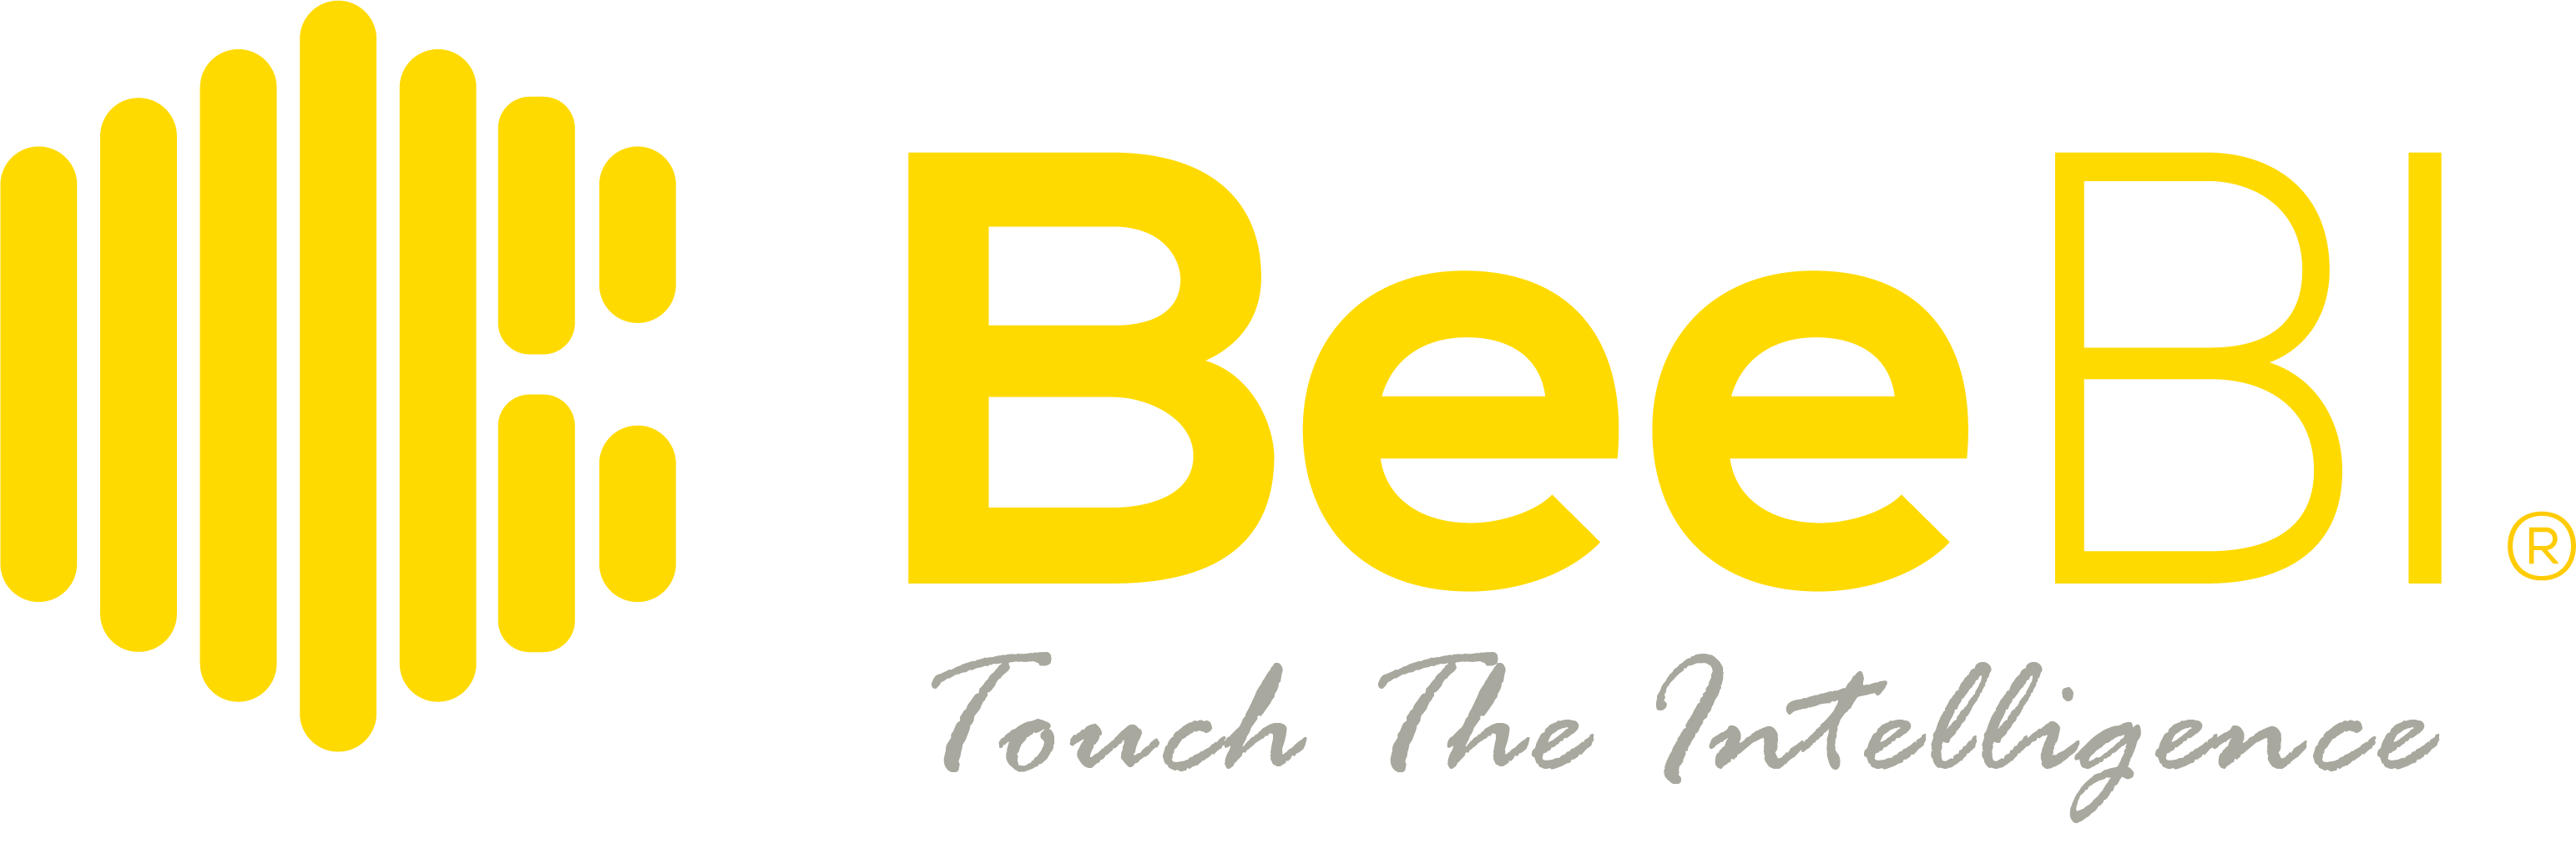 BeeBI